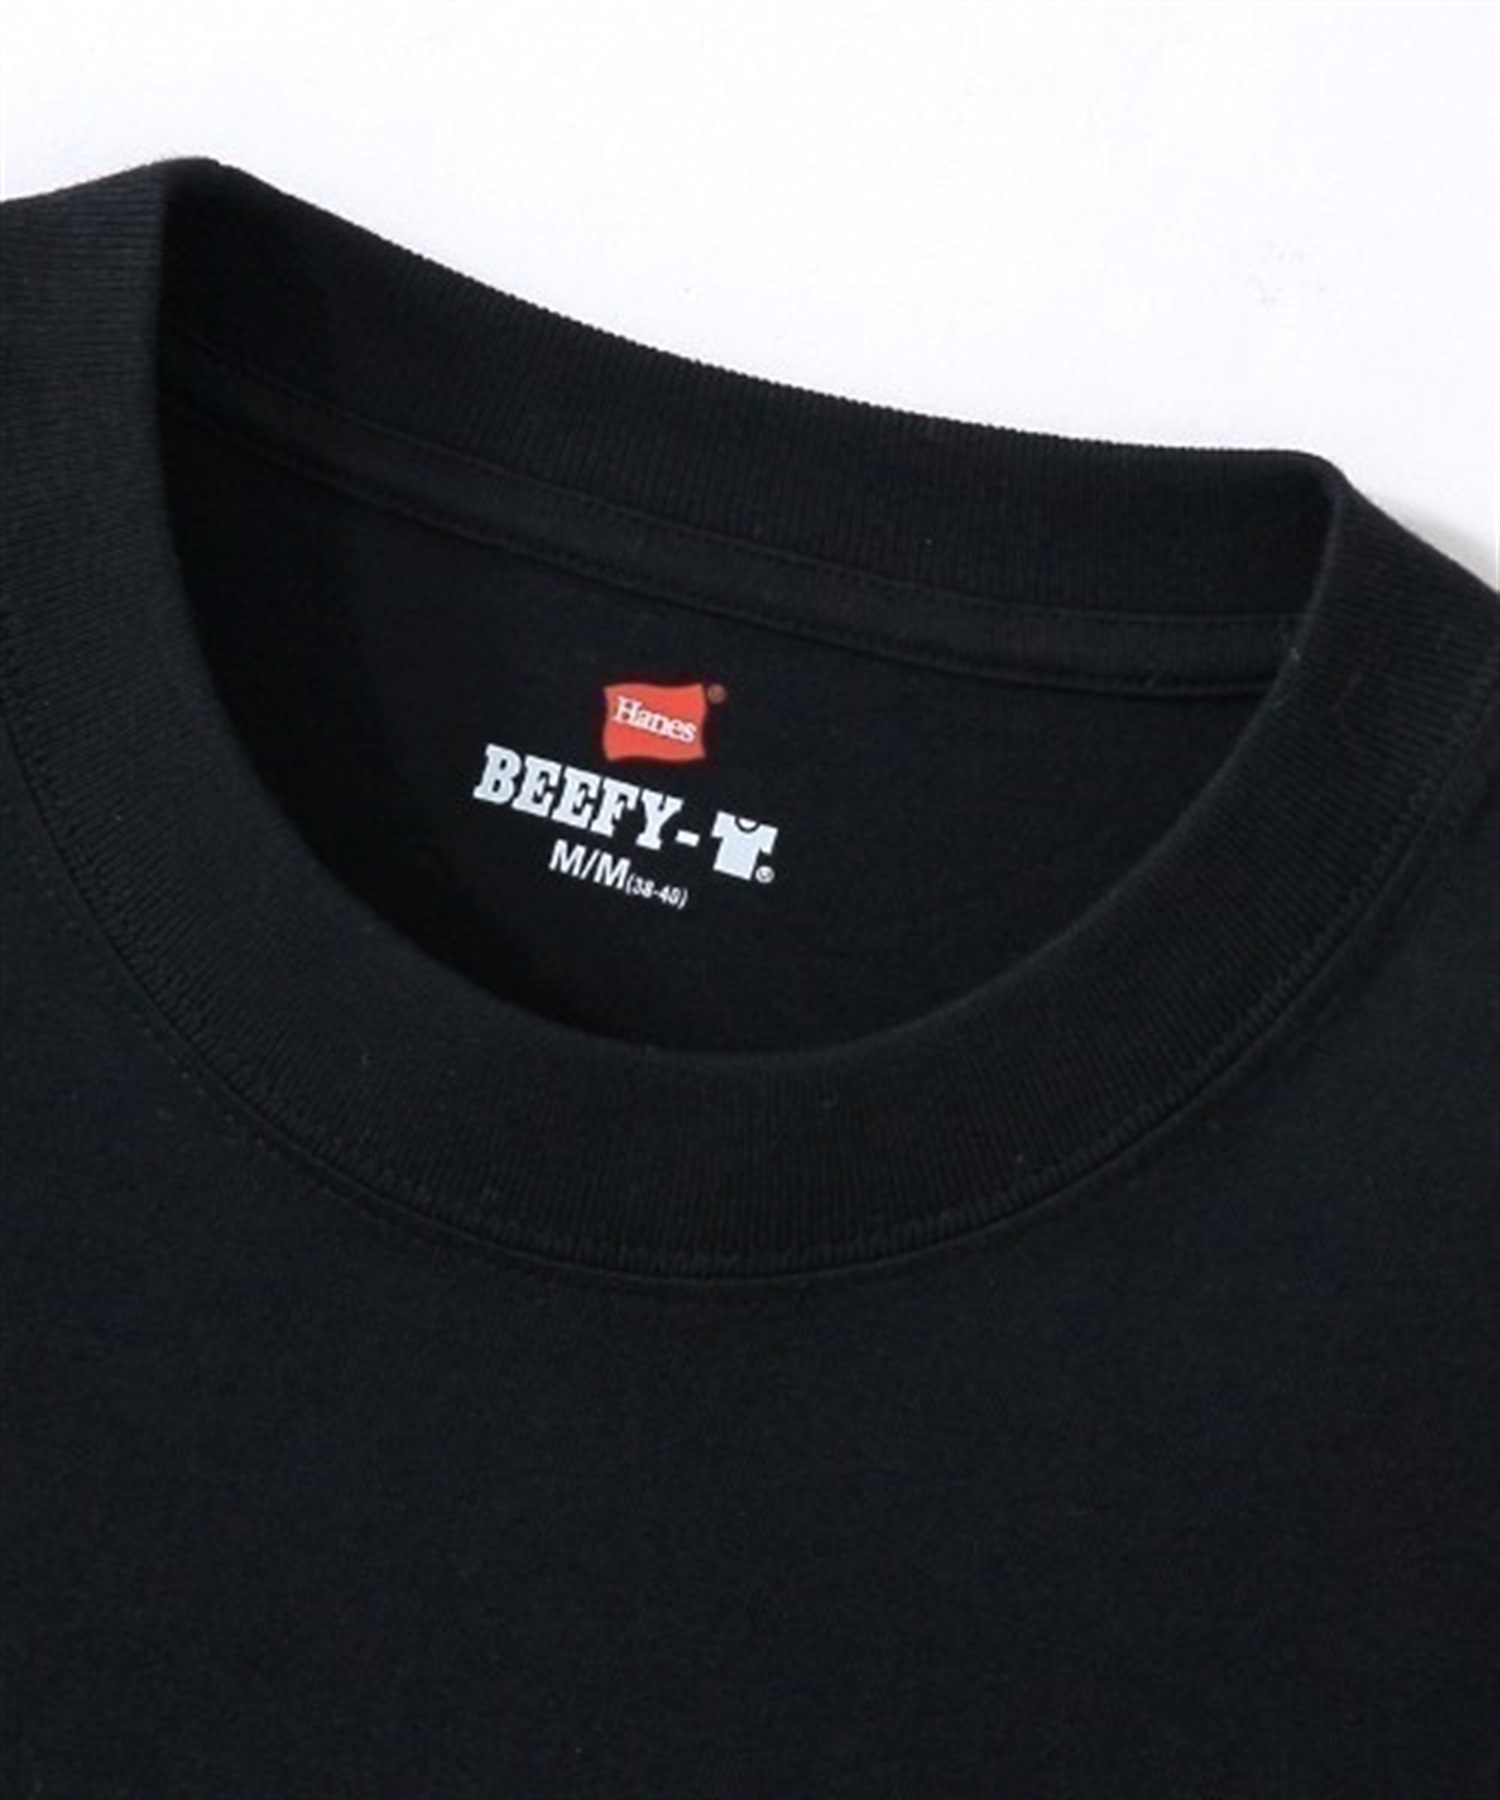 メンズ 半袖 Tシャツ HANES ヘインズ BEEFY CREW NECK T-SHIRT ビーフィー クルーネック Tシャツ H5180(370-S)